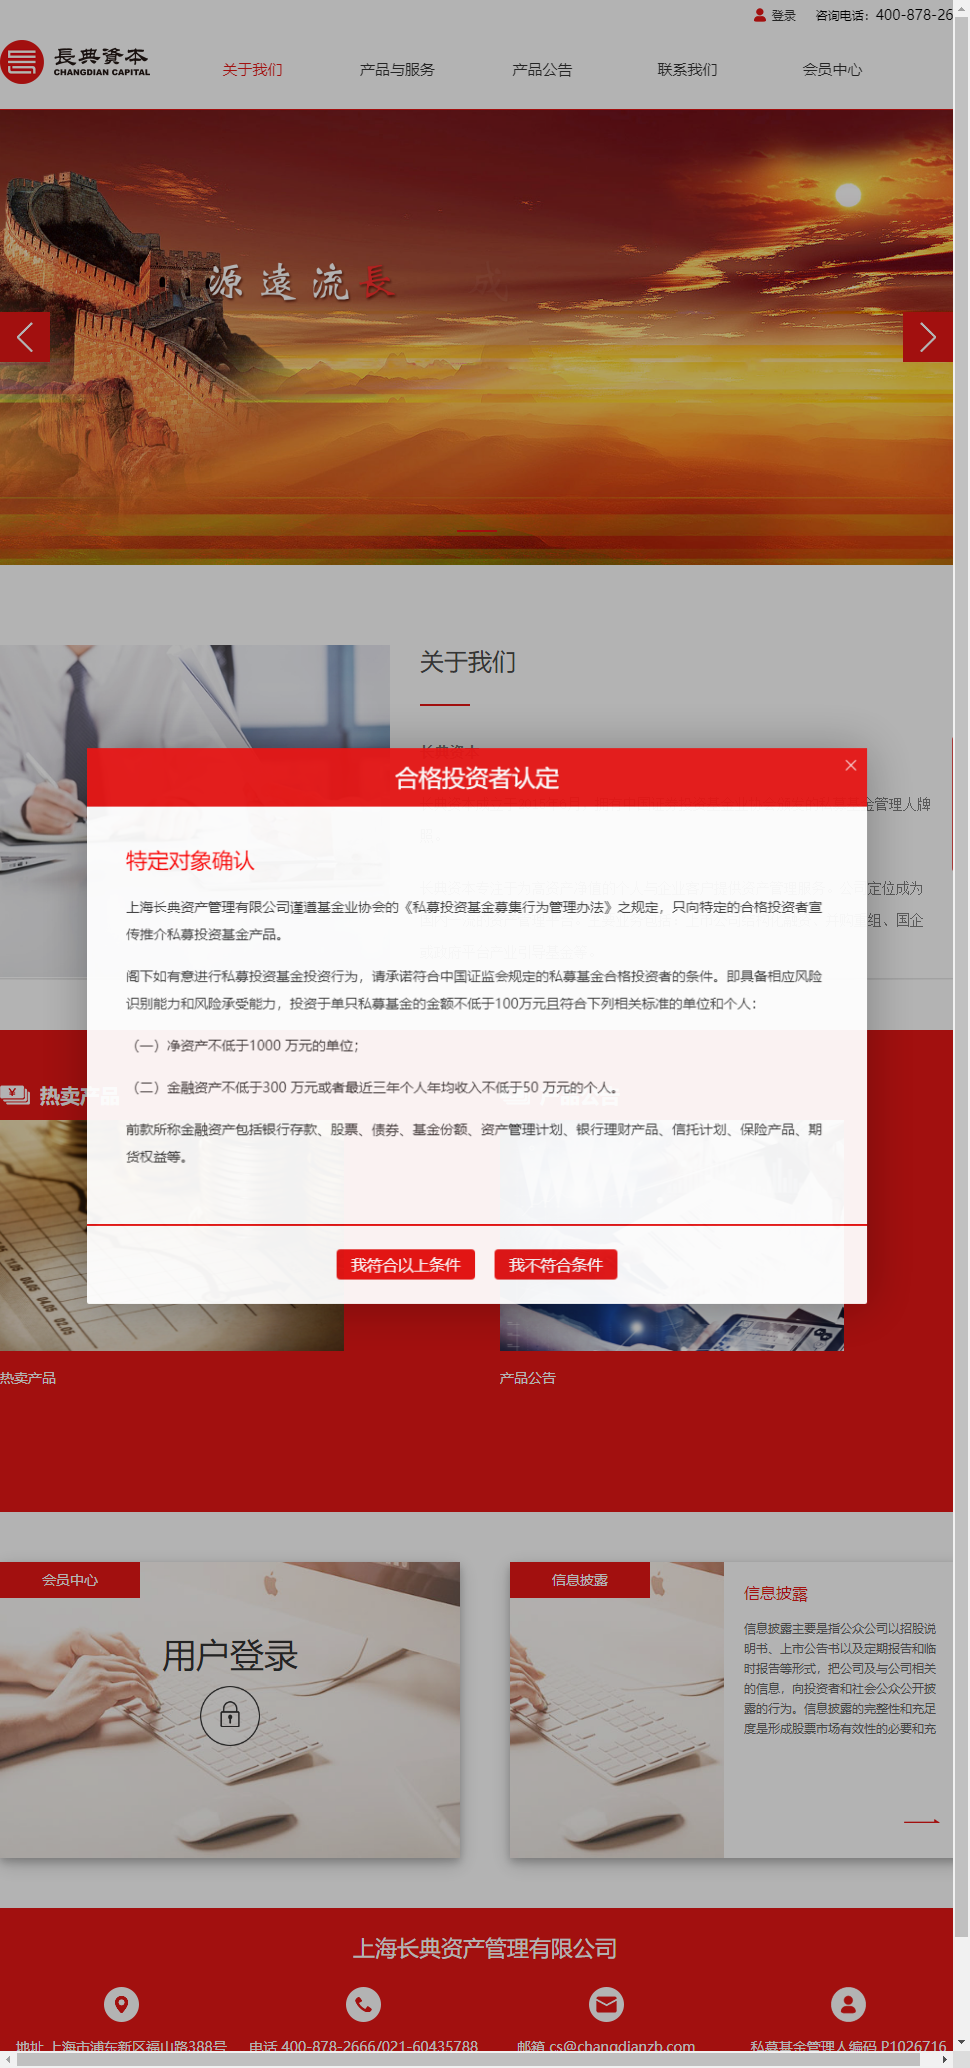 上海长典资产管理有限公司网站案例